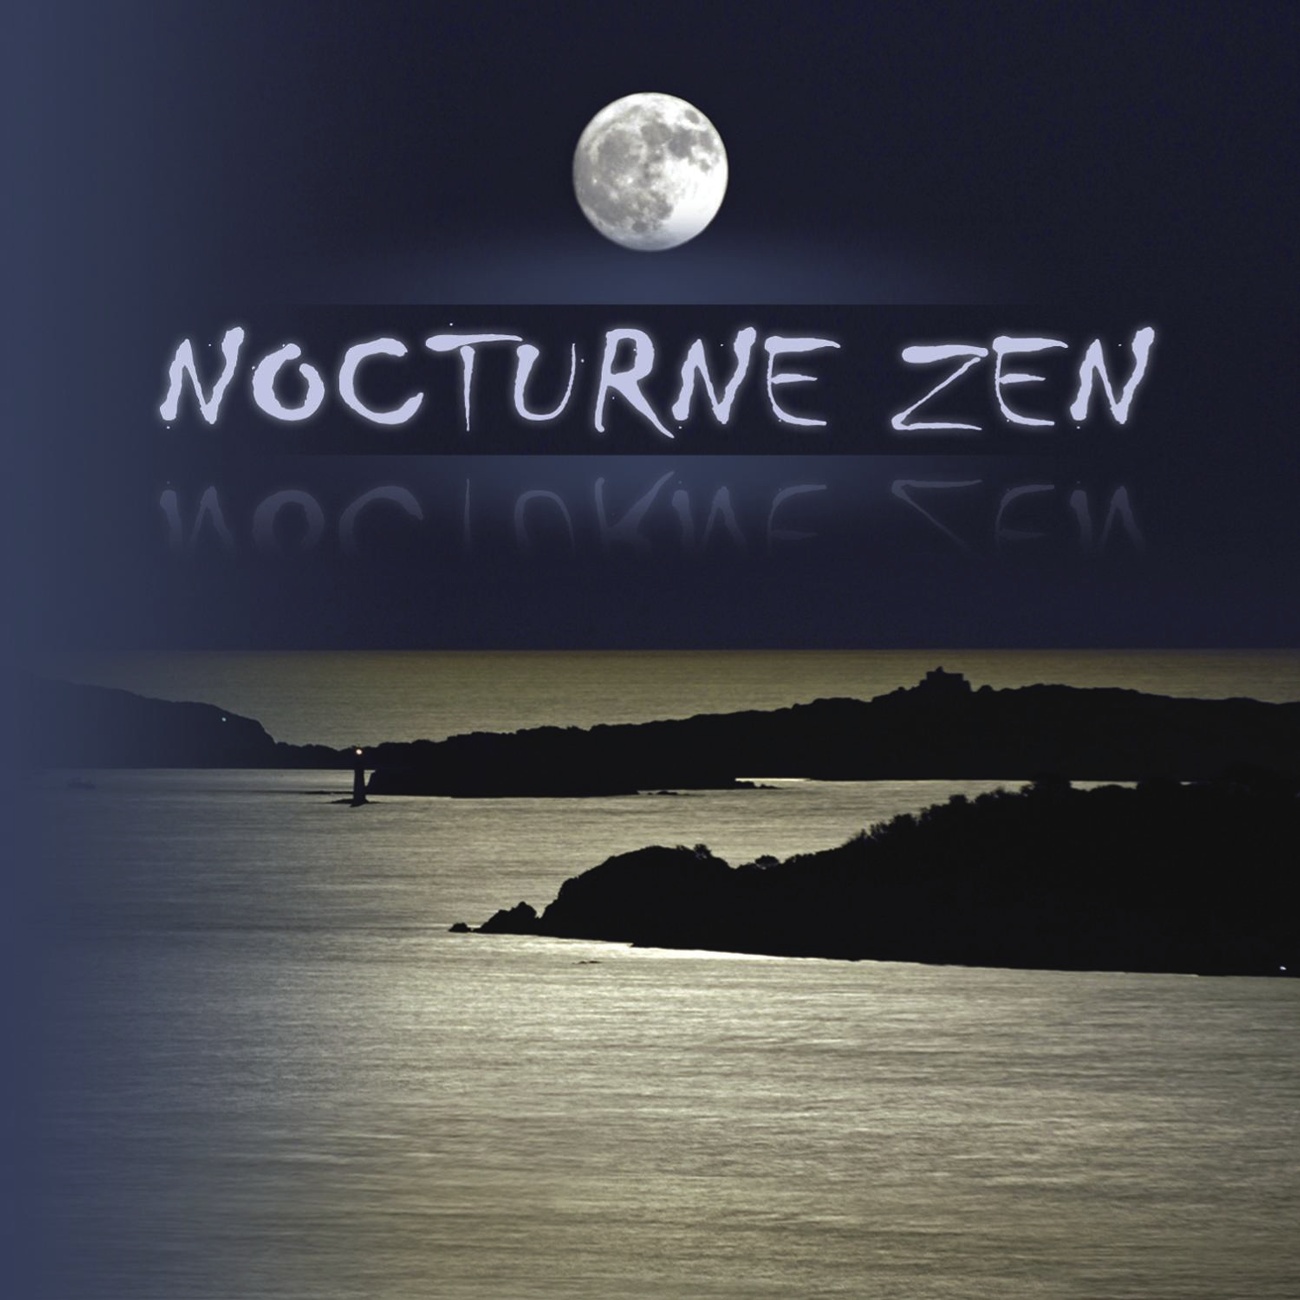 Nocturne Zen